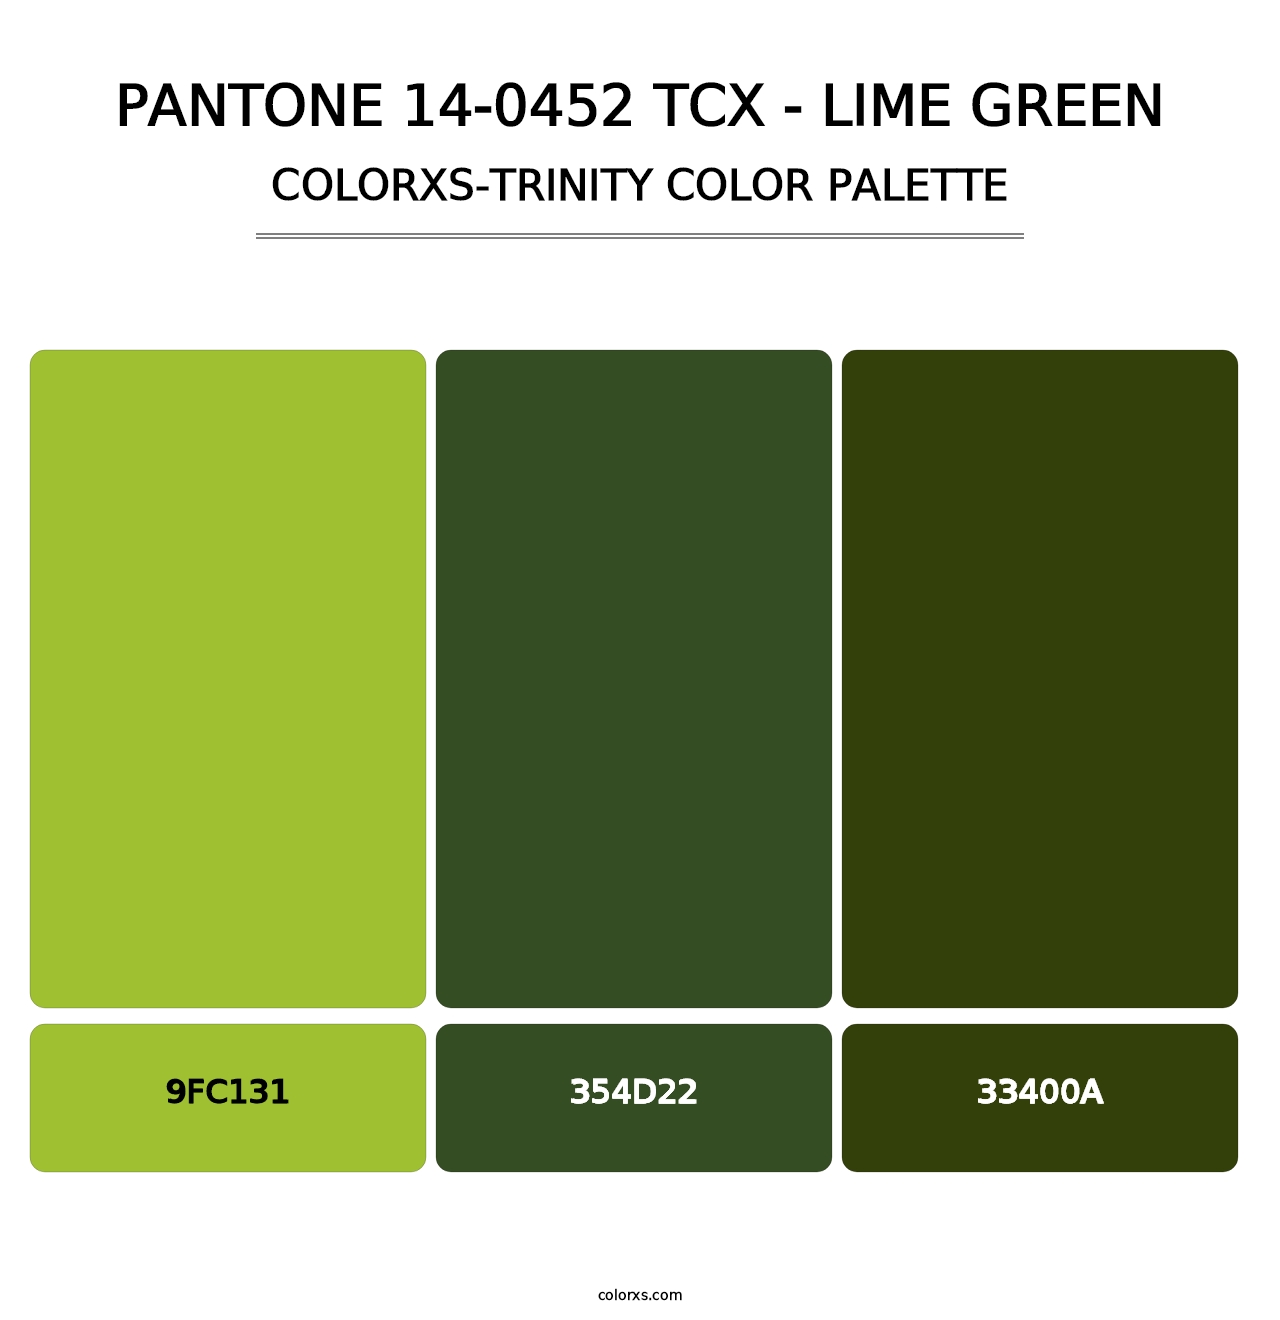 PANTONE 14-0452 TCX - Lime Green - Colorxs Trinity Palette